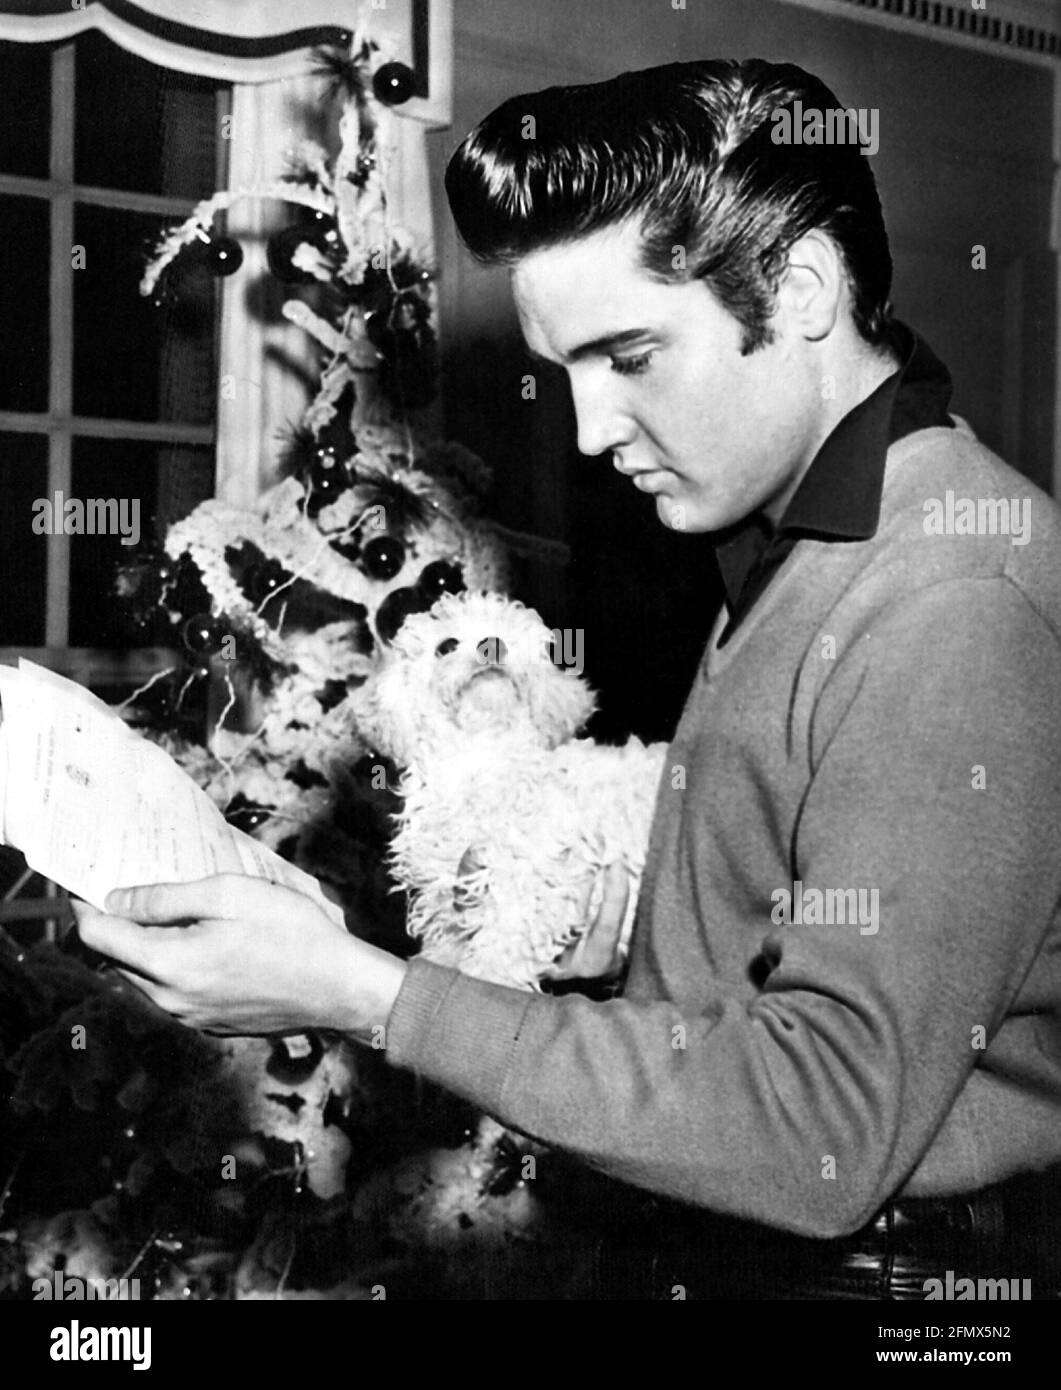 Presley, Elvis, 8.1.1935 - 16.8.1977, amerikanischer Sänger und Schauspieler, halbe Länge, weihnachten, Ende der 1950er Jahre, ZUSÄTZLICHE-RIGHTS-CLEARANCE-INFO-NOT-AVAILABLE Stockfoto